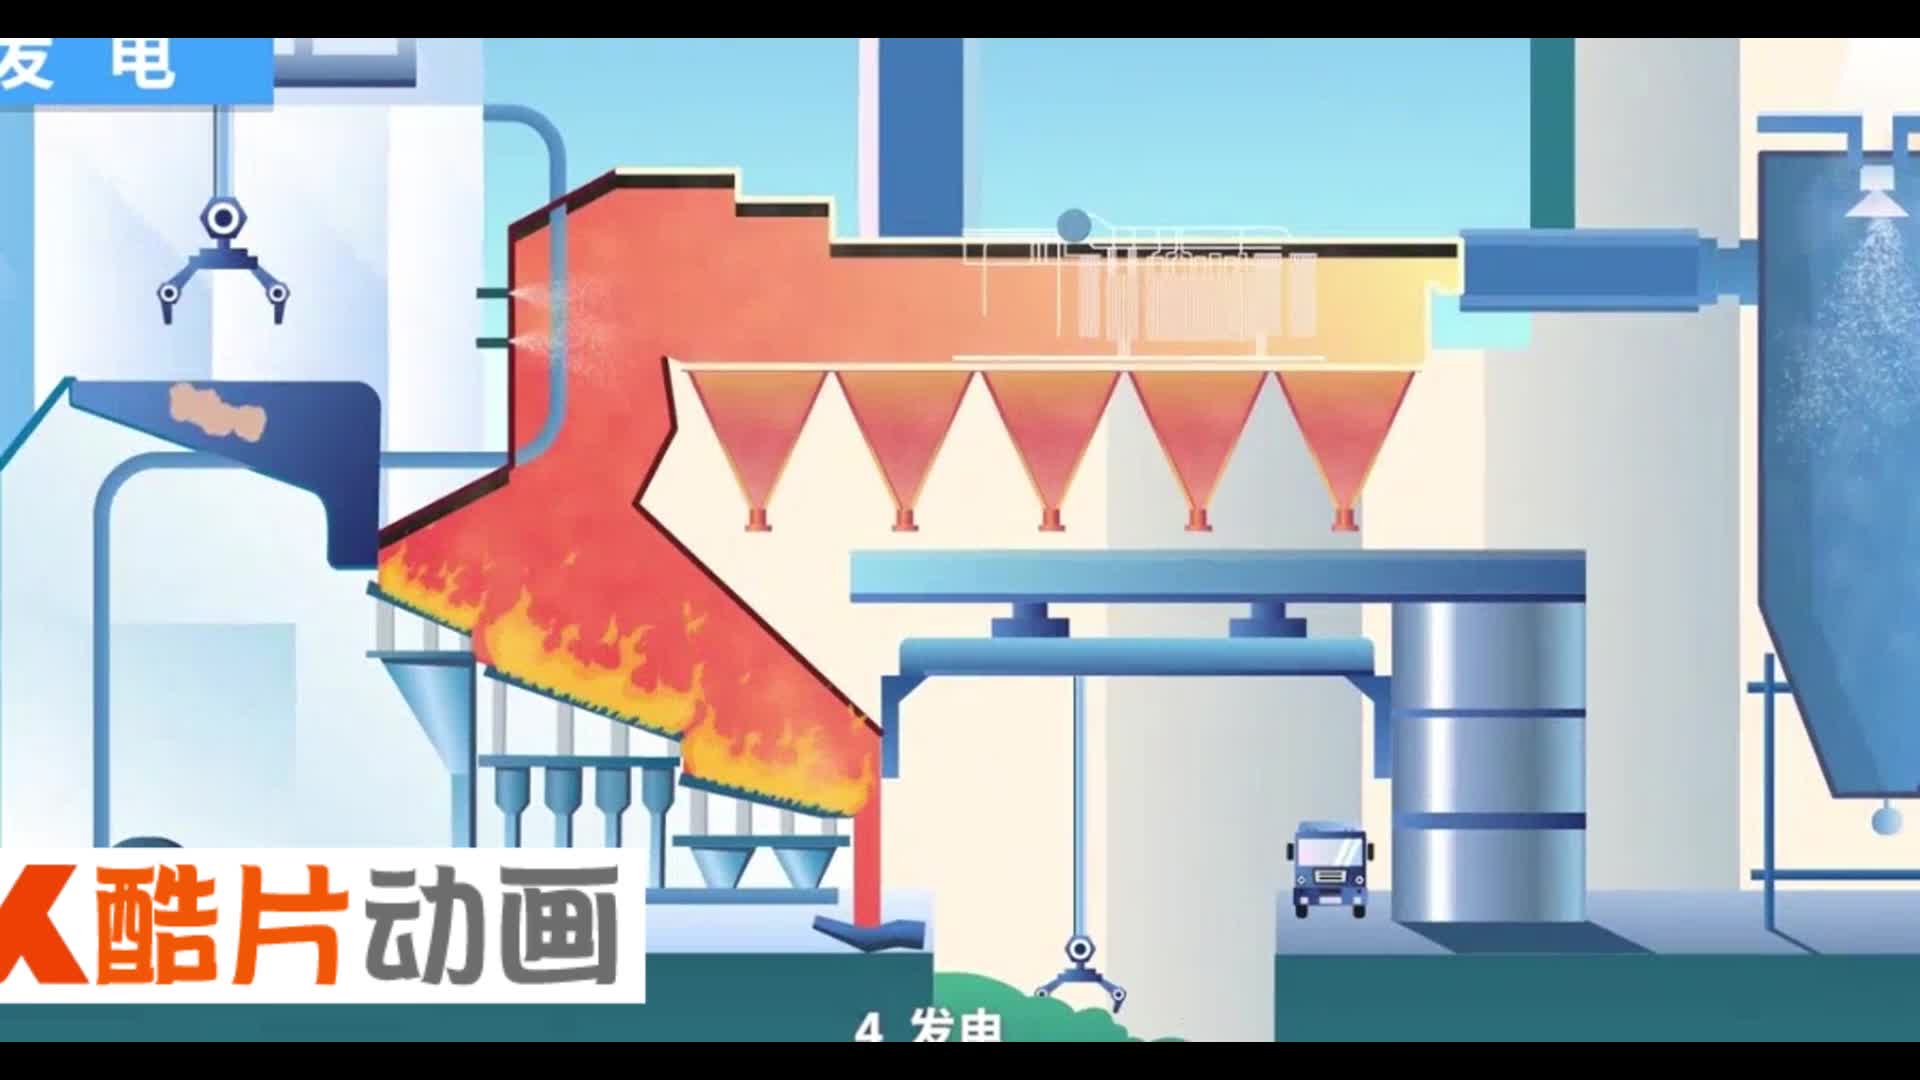 MG动画演示垃圾焚烧工艺流程工业展示第二集